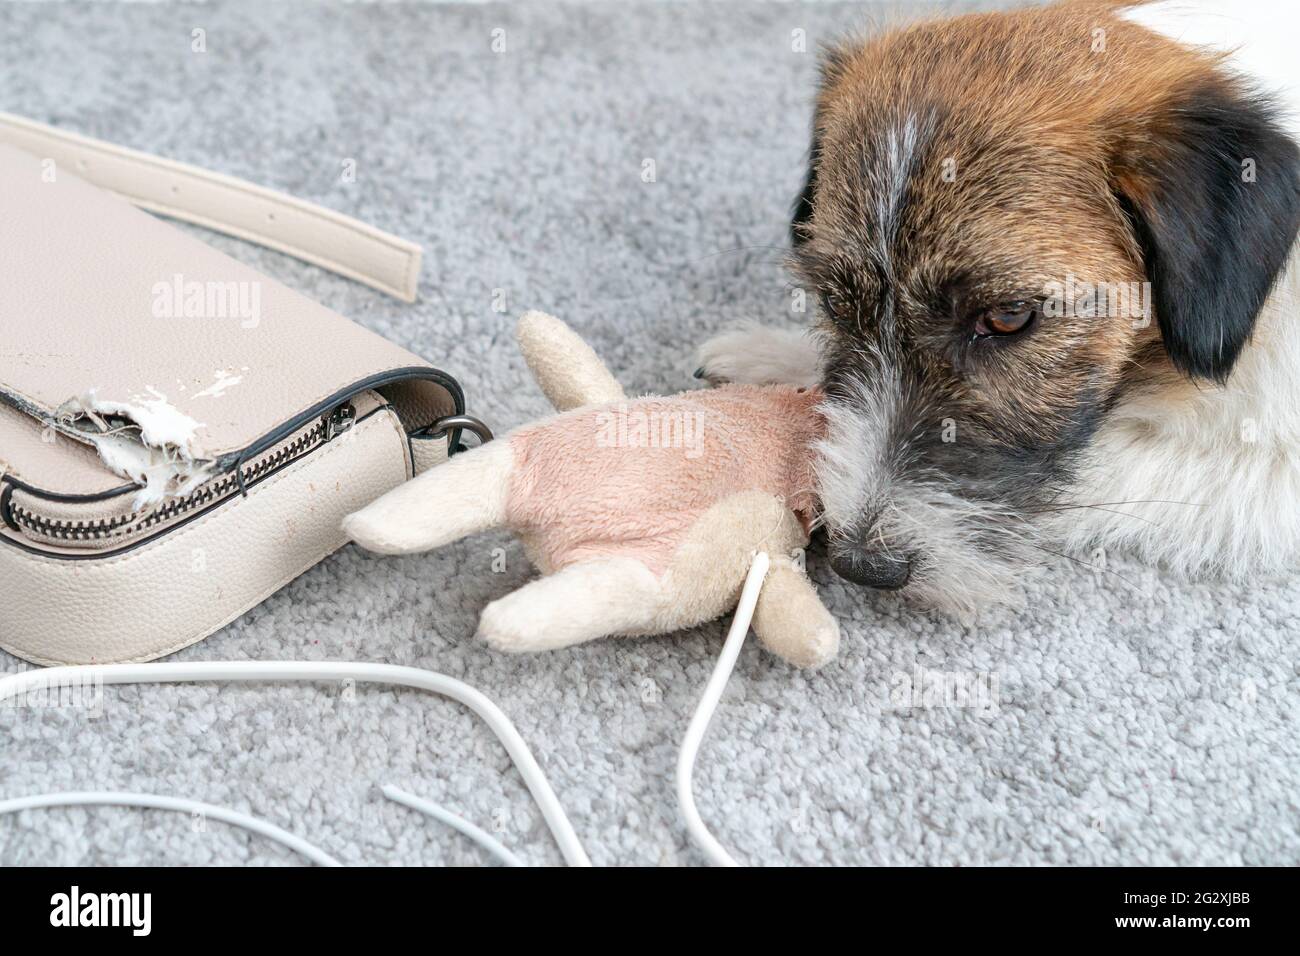 Jack Russell Terrier Hund machte ein Hausdurcheinander, allein gelassen, auf seiner Tasche gekaut, Telefonkabel. Ohne den Besitzer. Schaut nicht auf die Kamera. Schlechtes Hundeverhalten Stockfoto